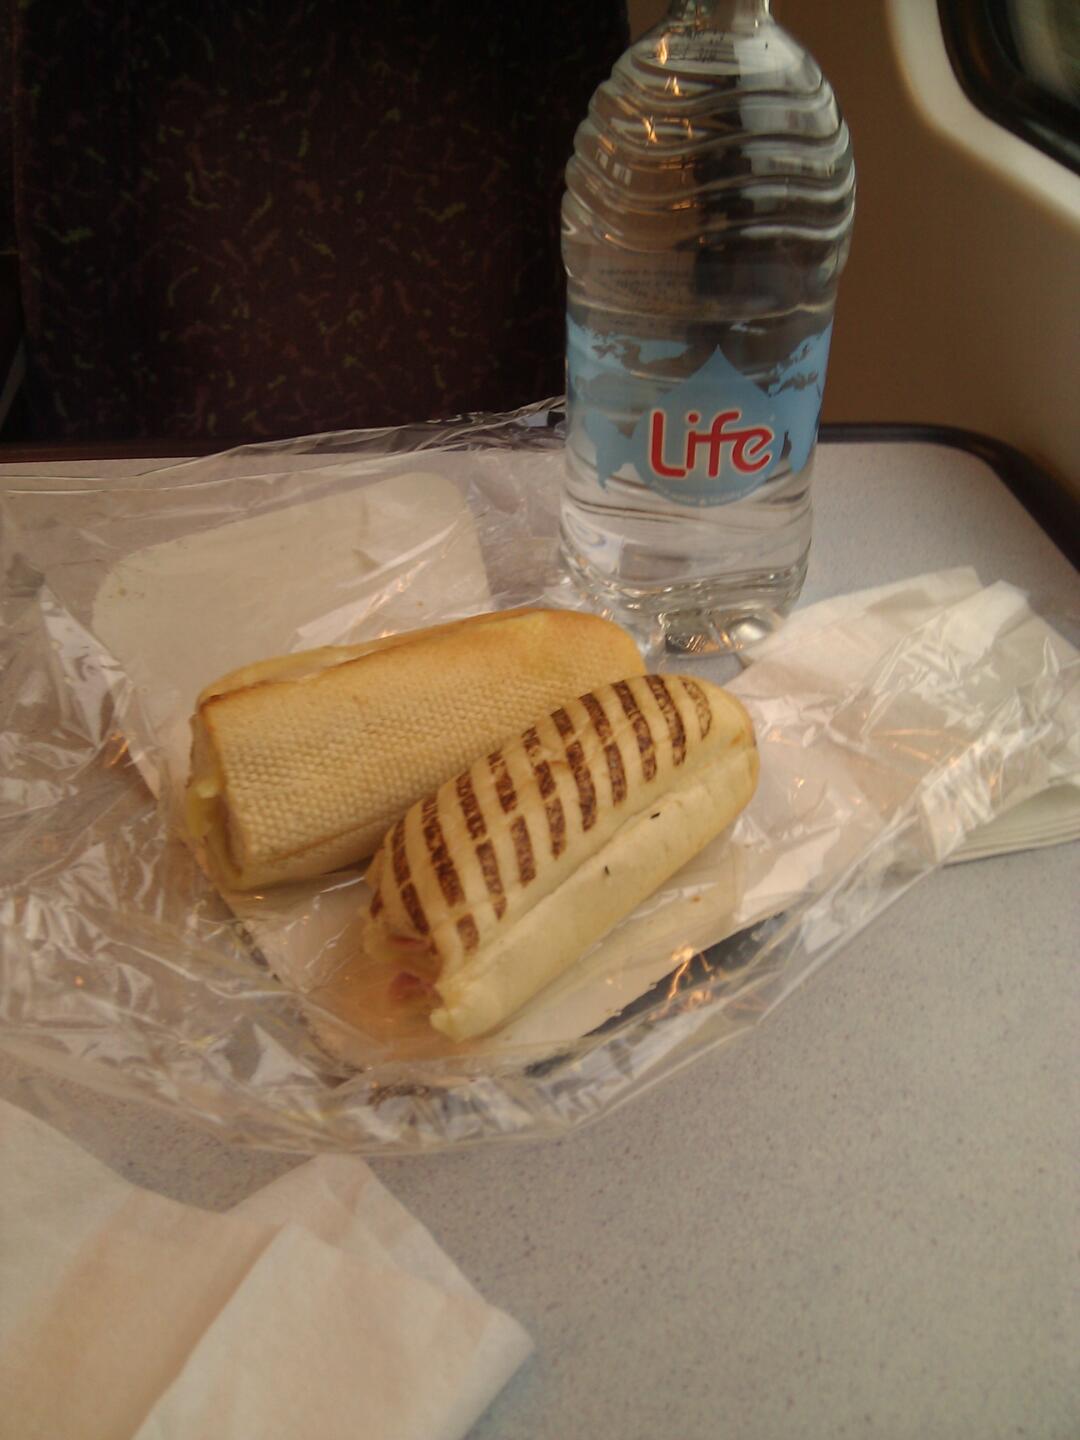 Endlich wieder richtiges Essen: im Zug auf dem Weg von Manchester nach Durham ein in der Mikrowelle aufgewärmtes Käsebaguette :-)